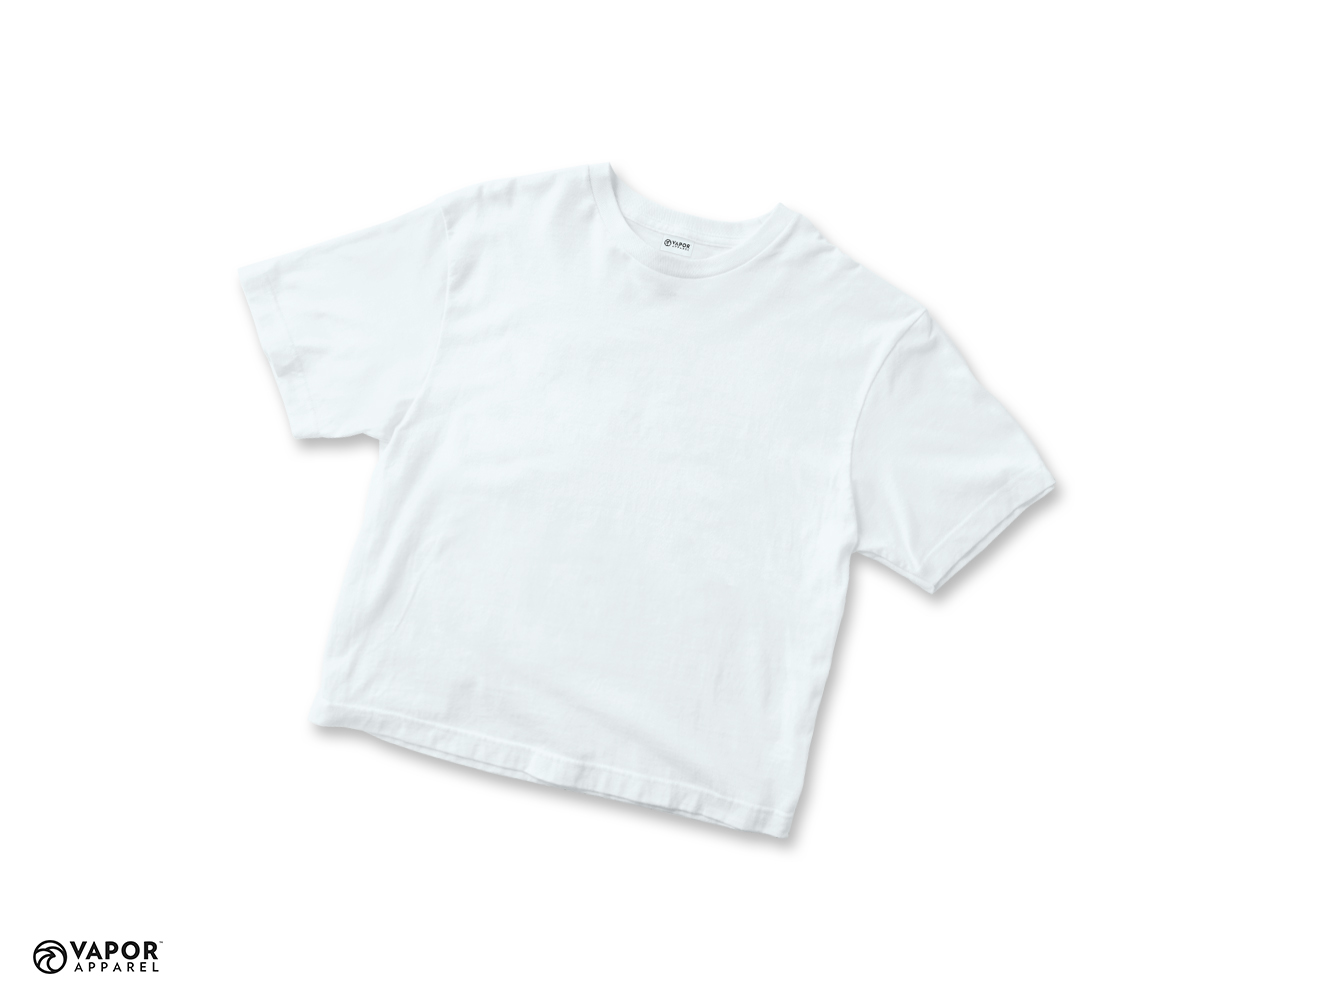 Vapor Sublimation T-Shirt for Junior size 140 - White